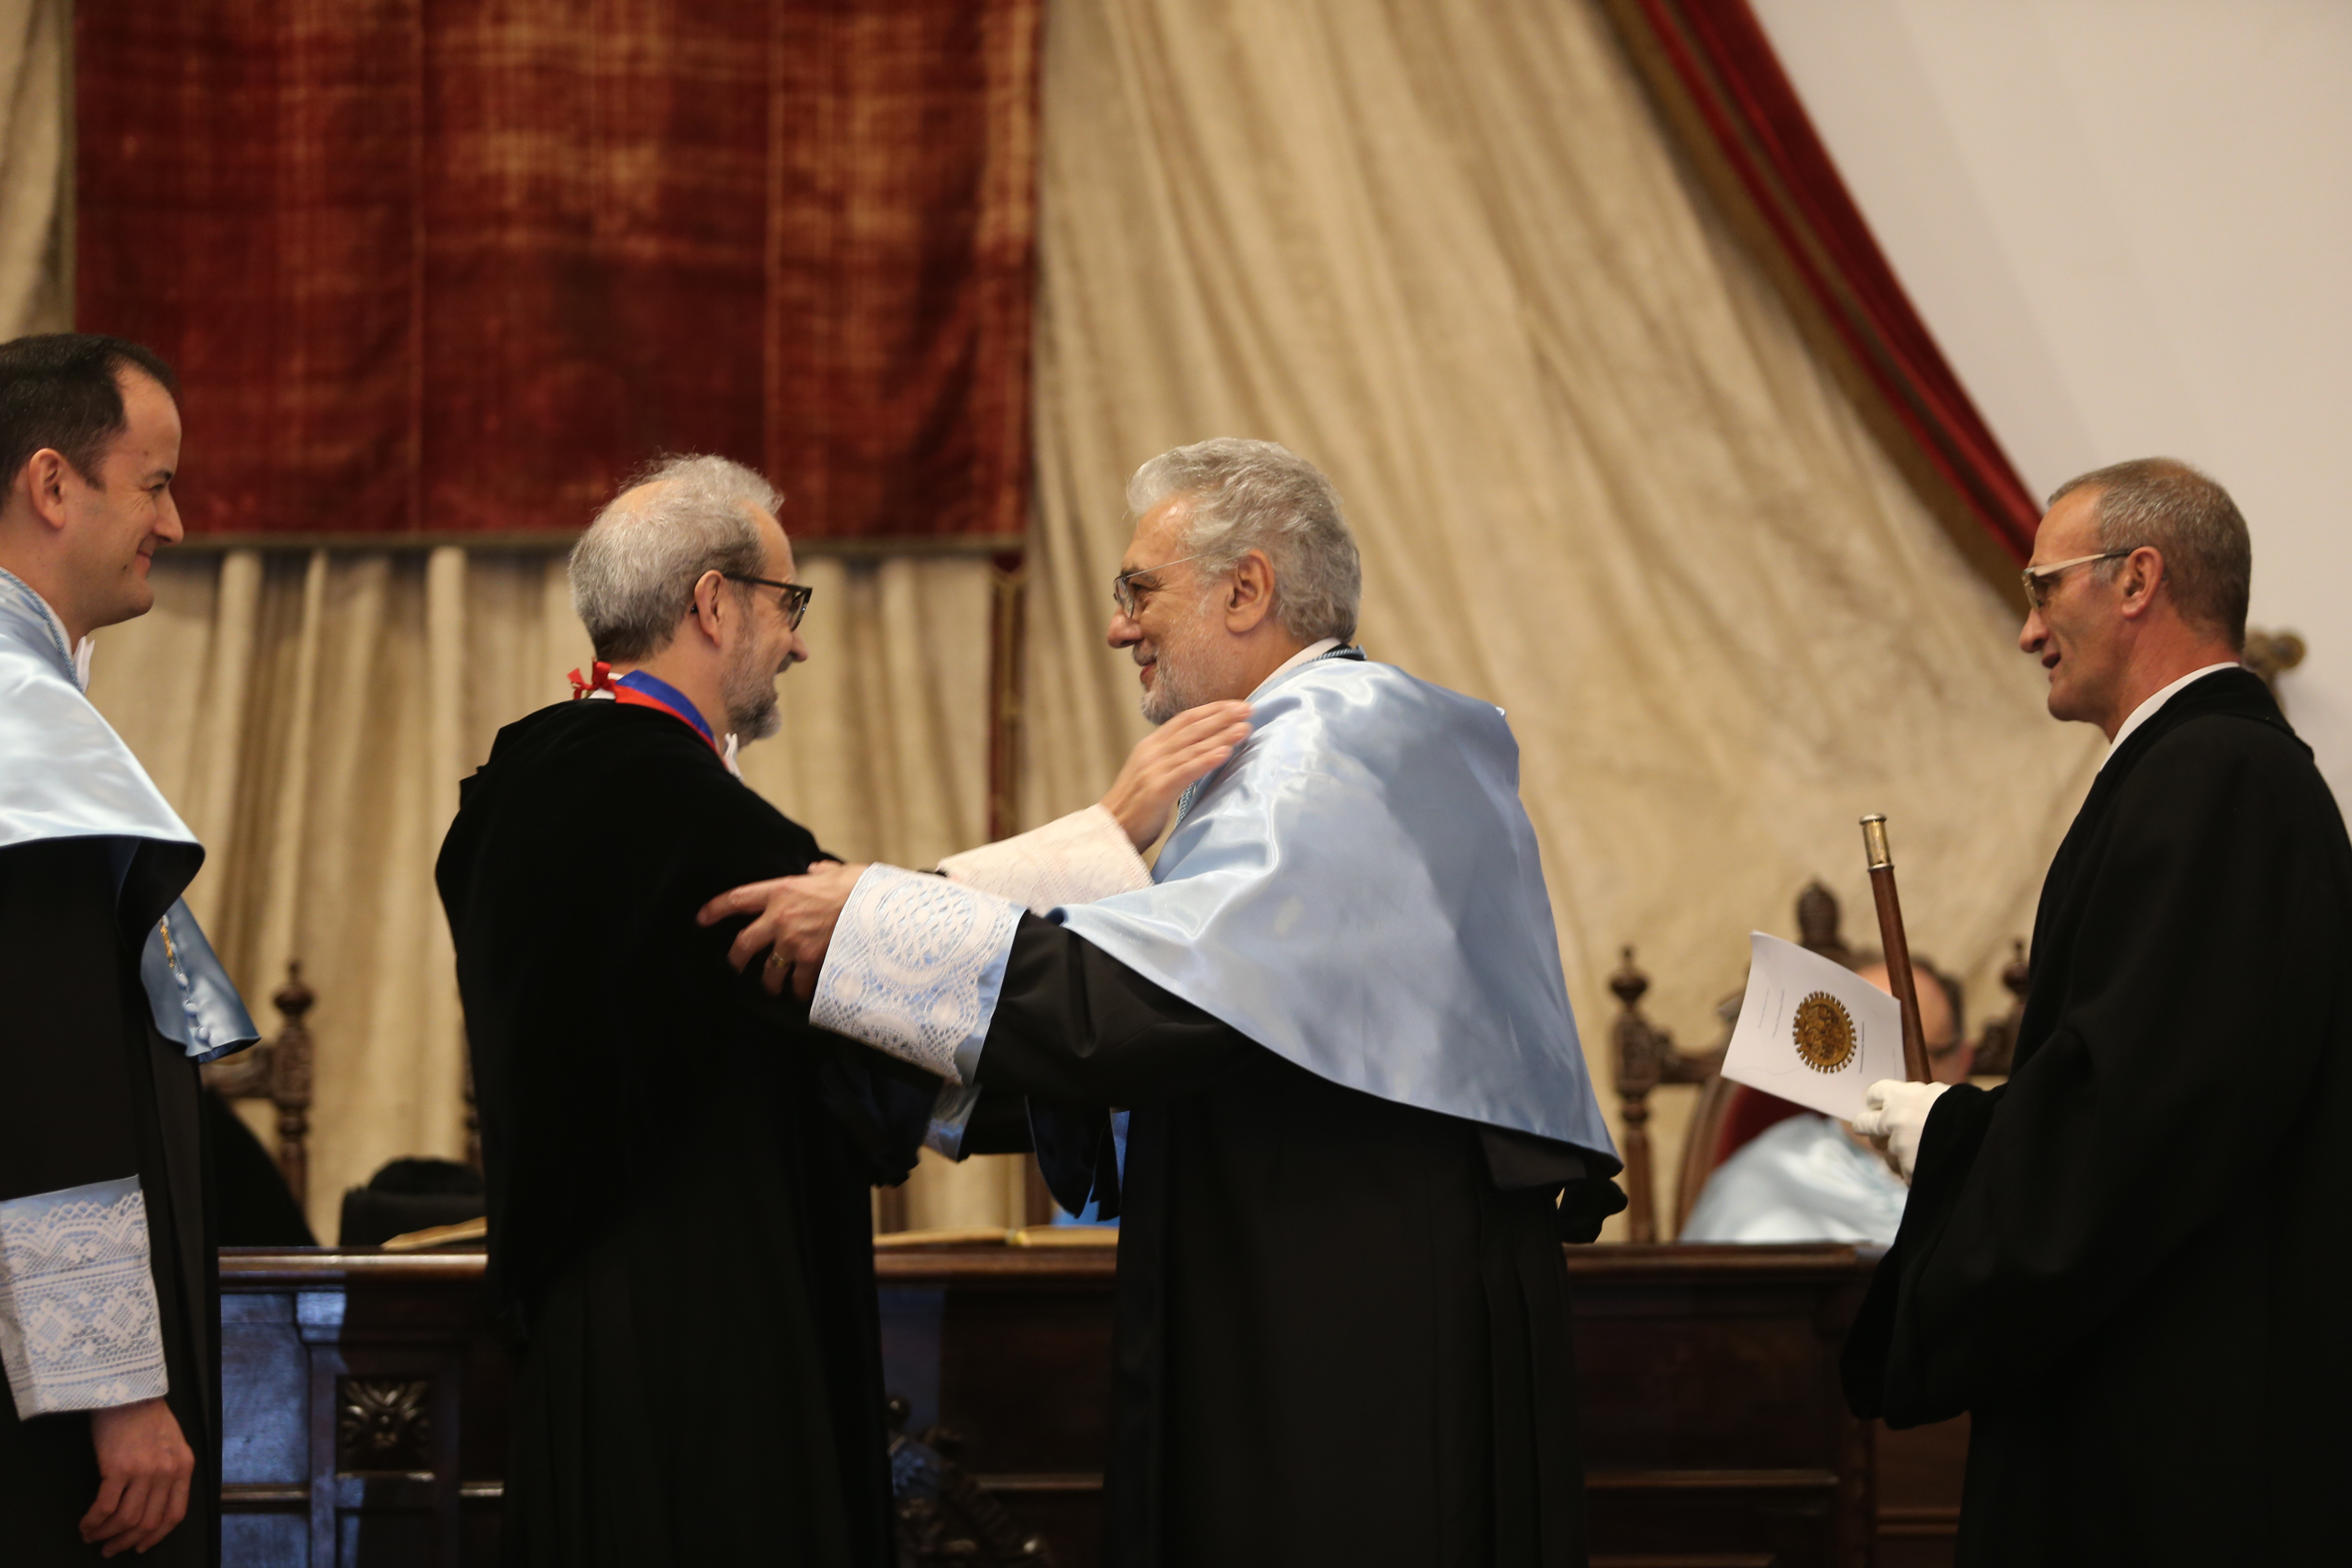 Plácido Domingo reivindica la presencia de la música en todos los niveles de la Educación al recibir el doctorado honoris causa por la Universidad de Salamanca